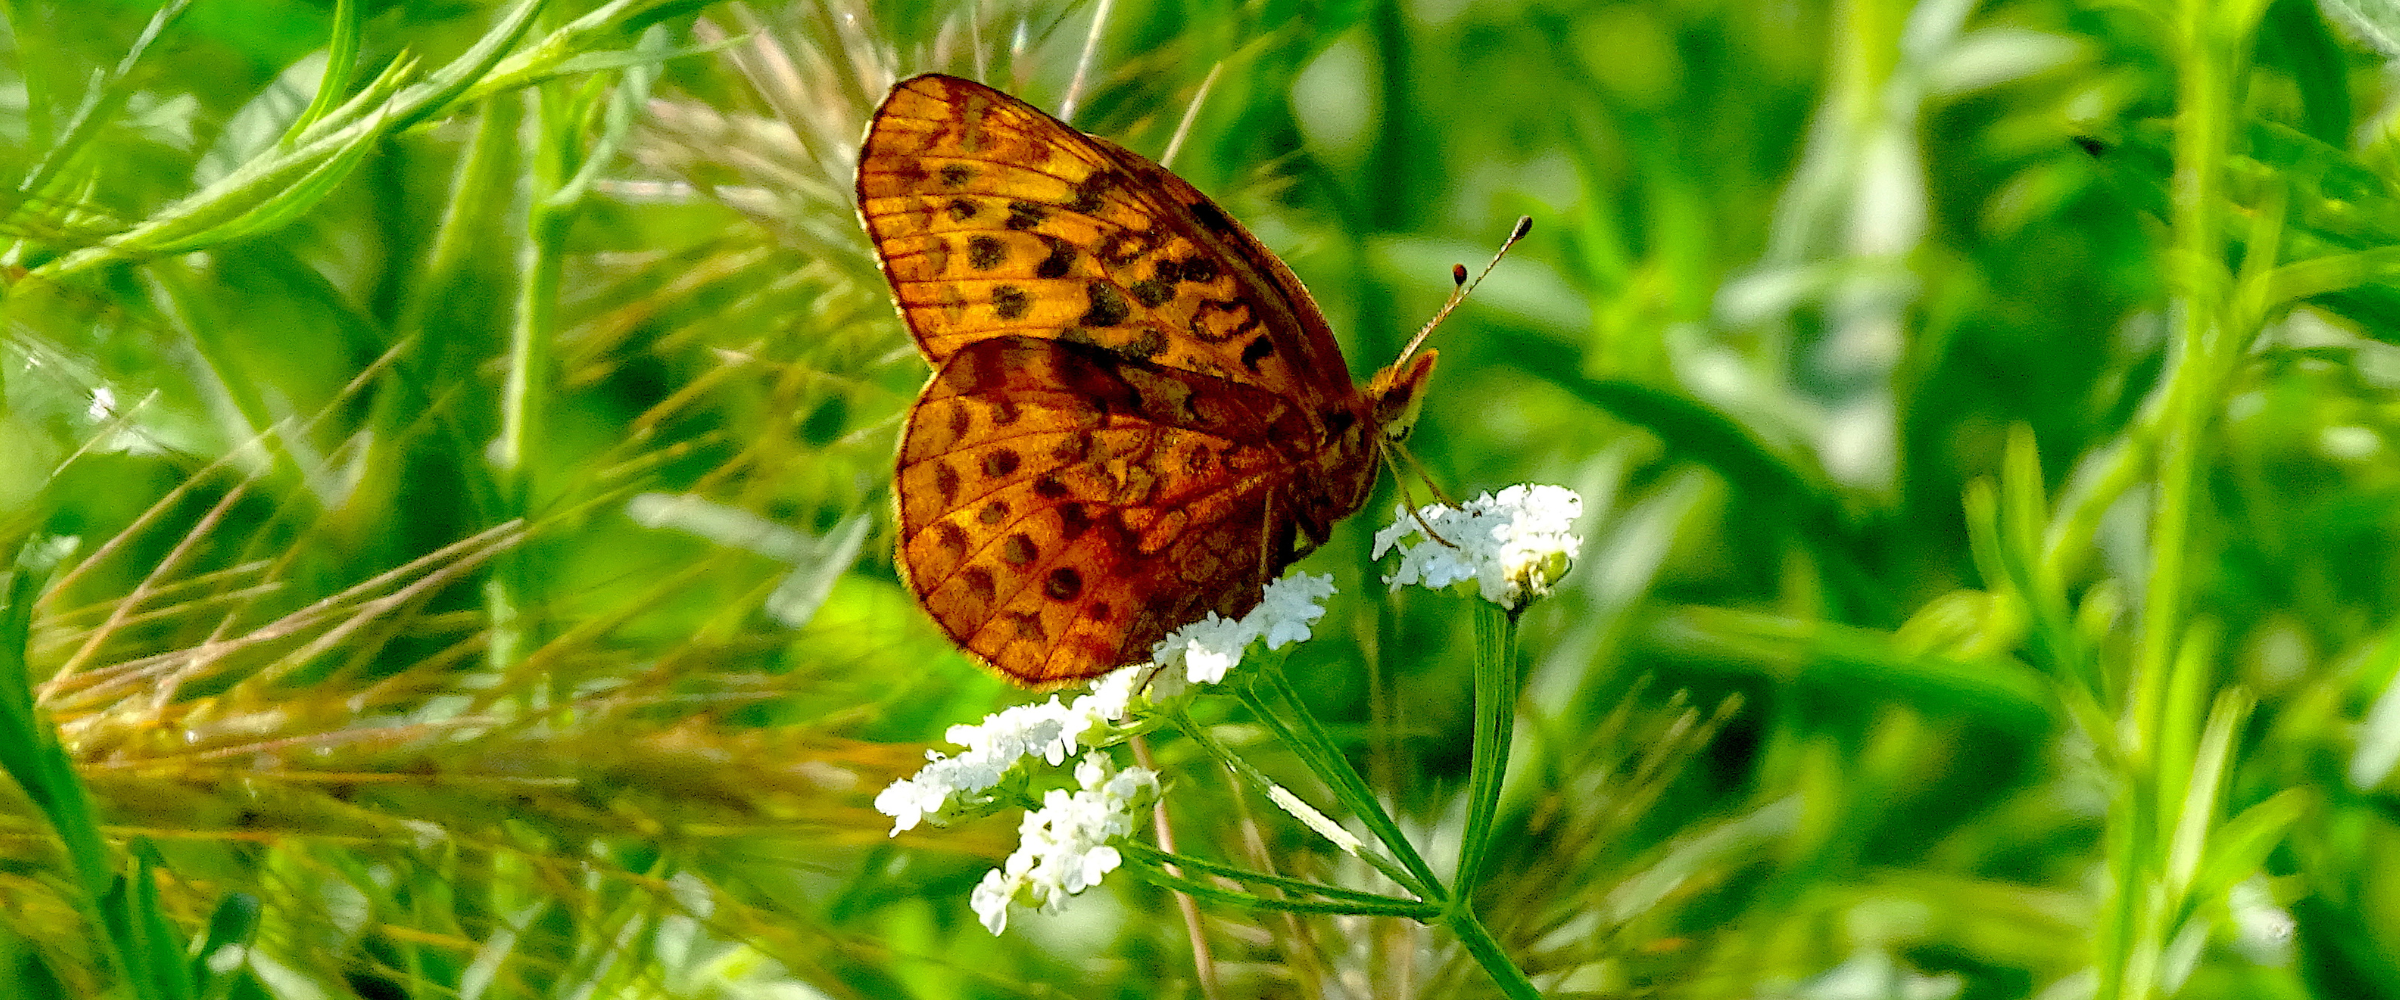 Butterfly in field